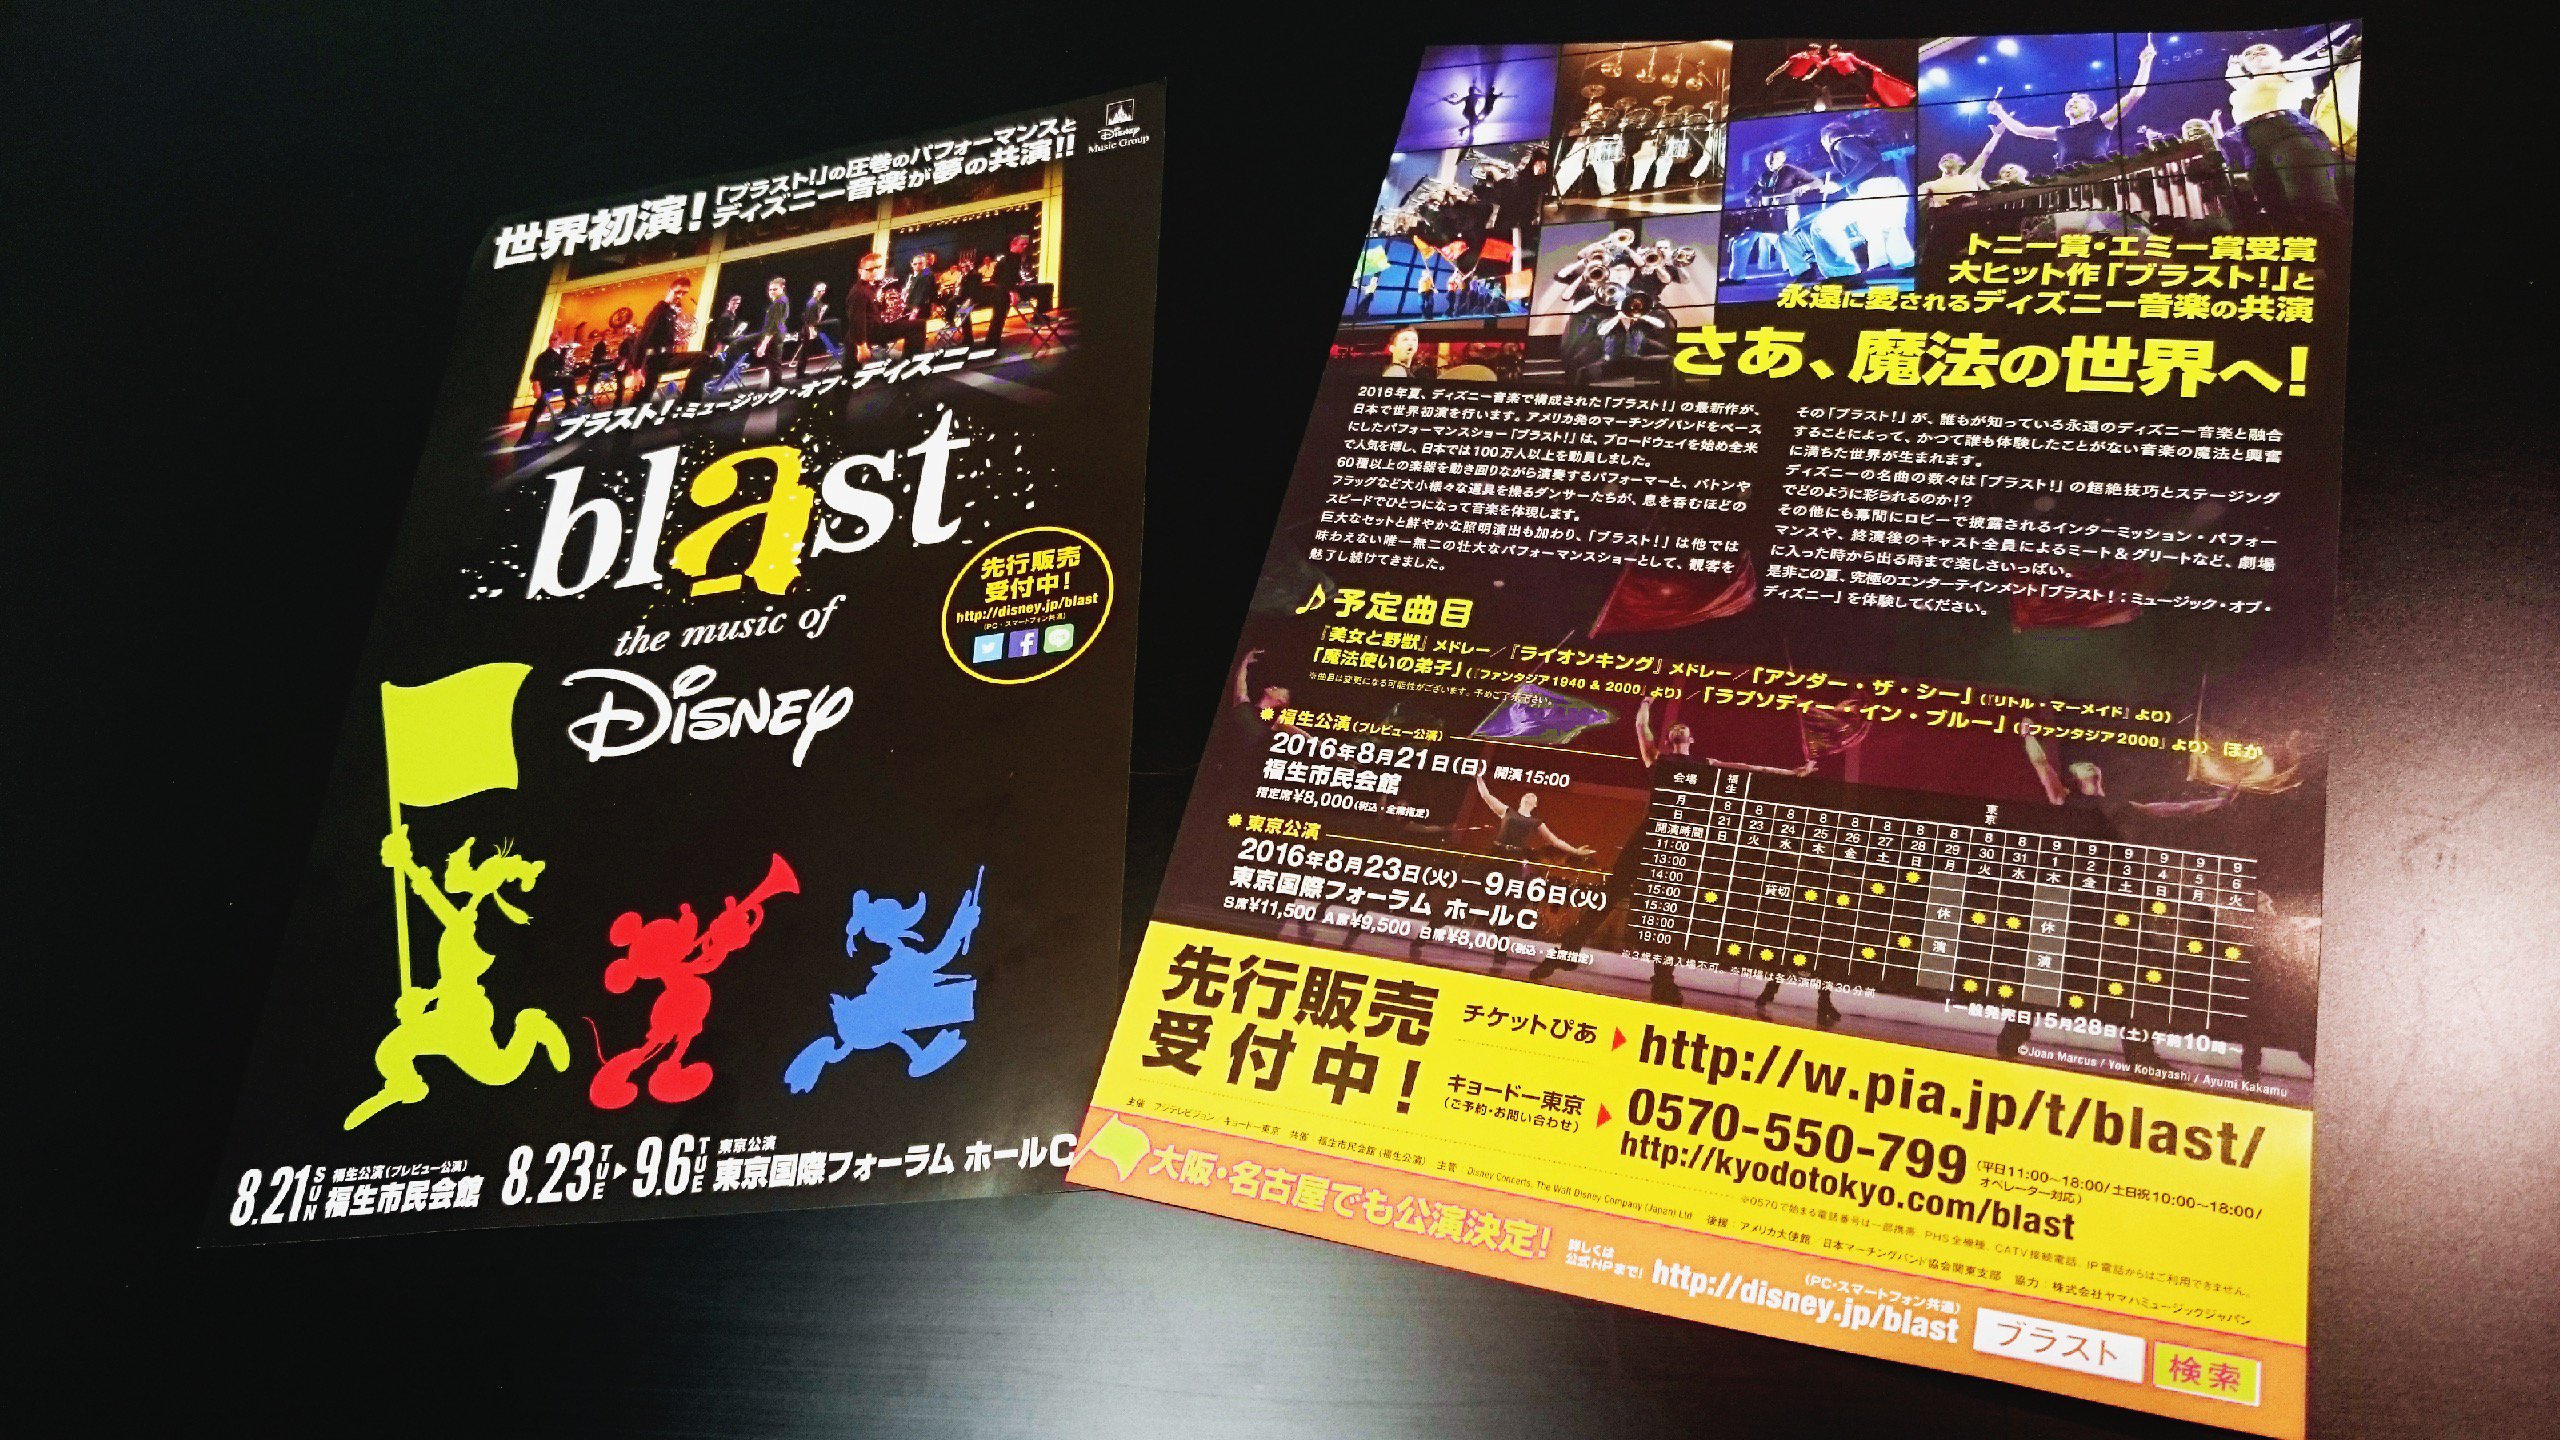 Blast Japan ブラスト ミュージック オブ ディズニー 公演チラシとポスターが完成しました 公演会場や チケットぴあ店舗 １部店舗を除く にて 順次配布予定です Blast Tour Jp Blastjapan T Co 1ucff2mauq Twitter